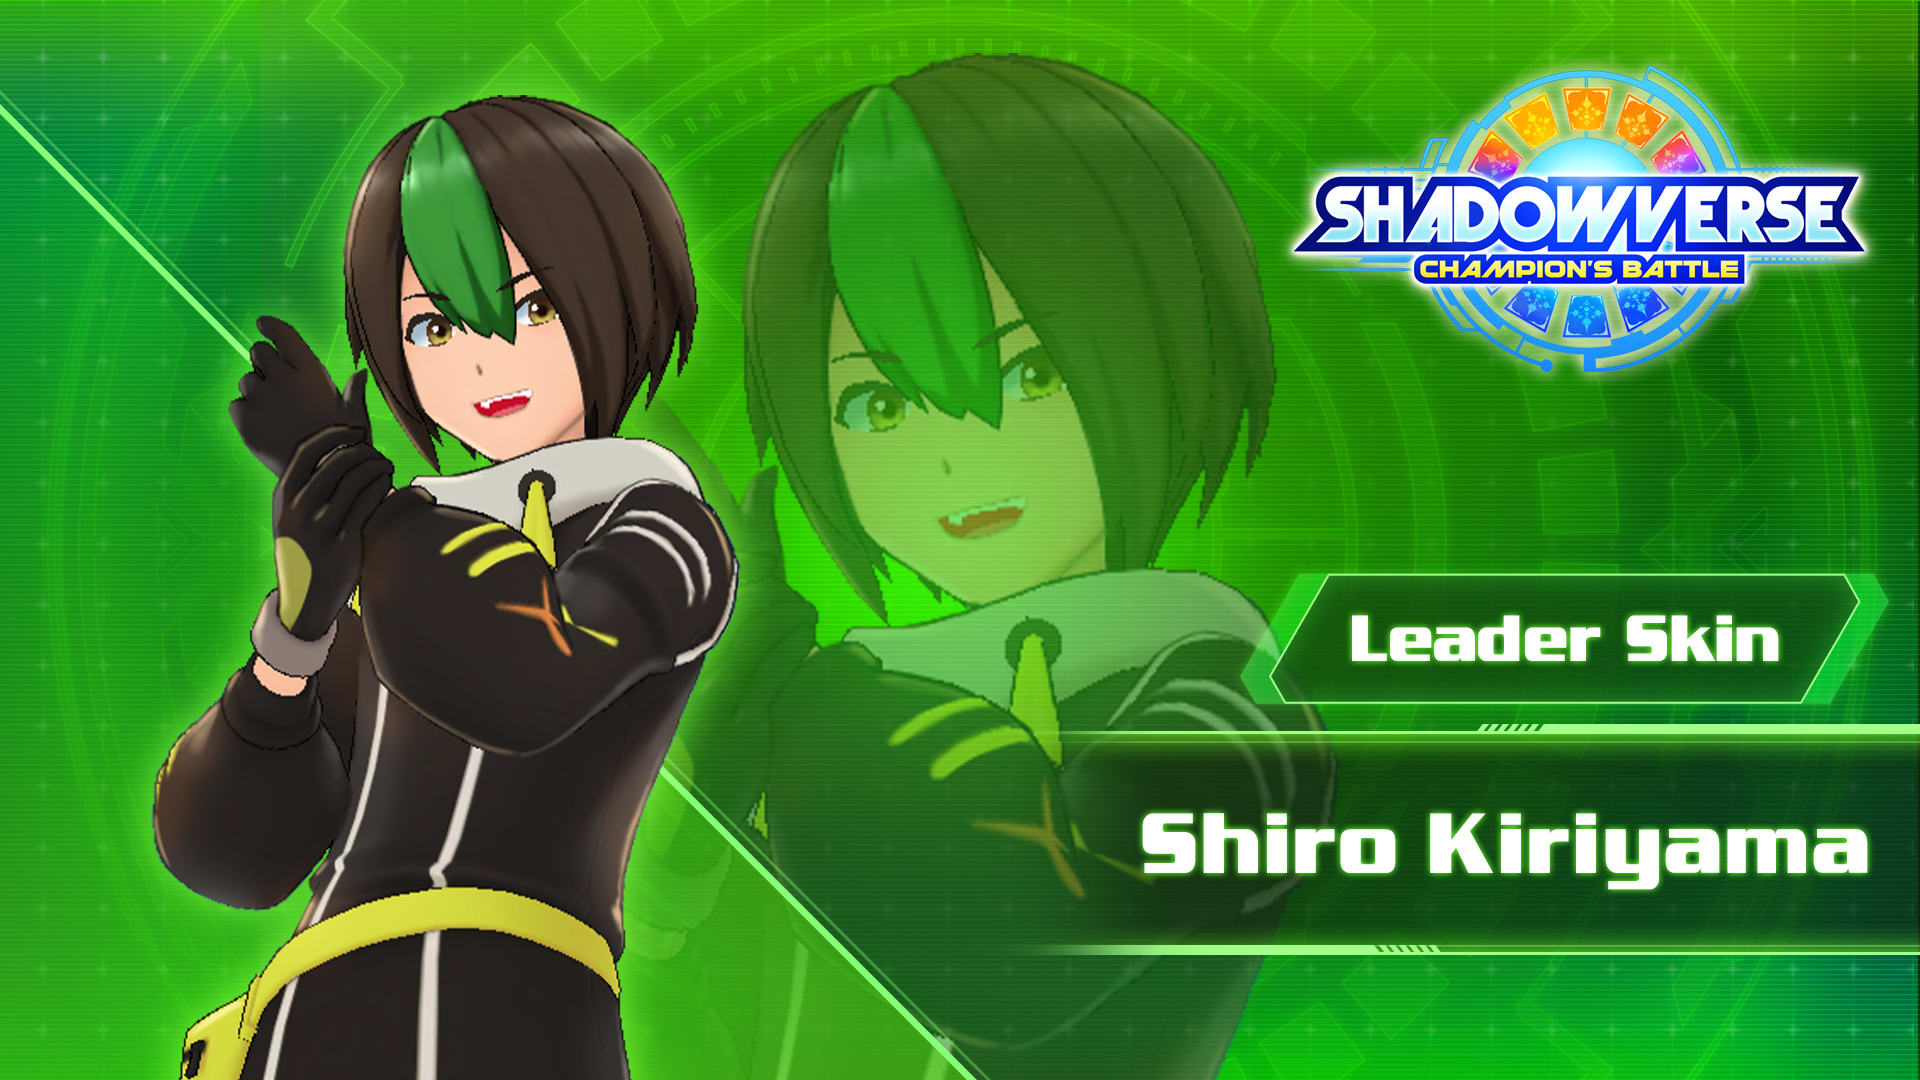 Leader Skin: "Shiro Kiriyama"